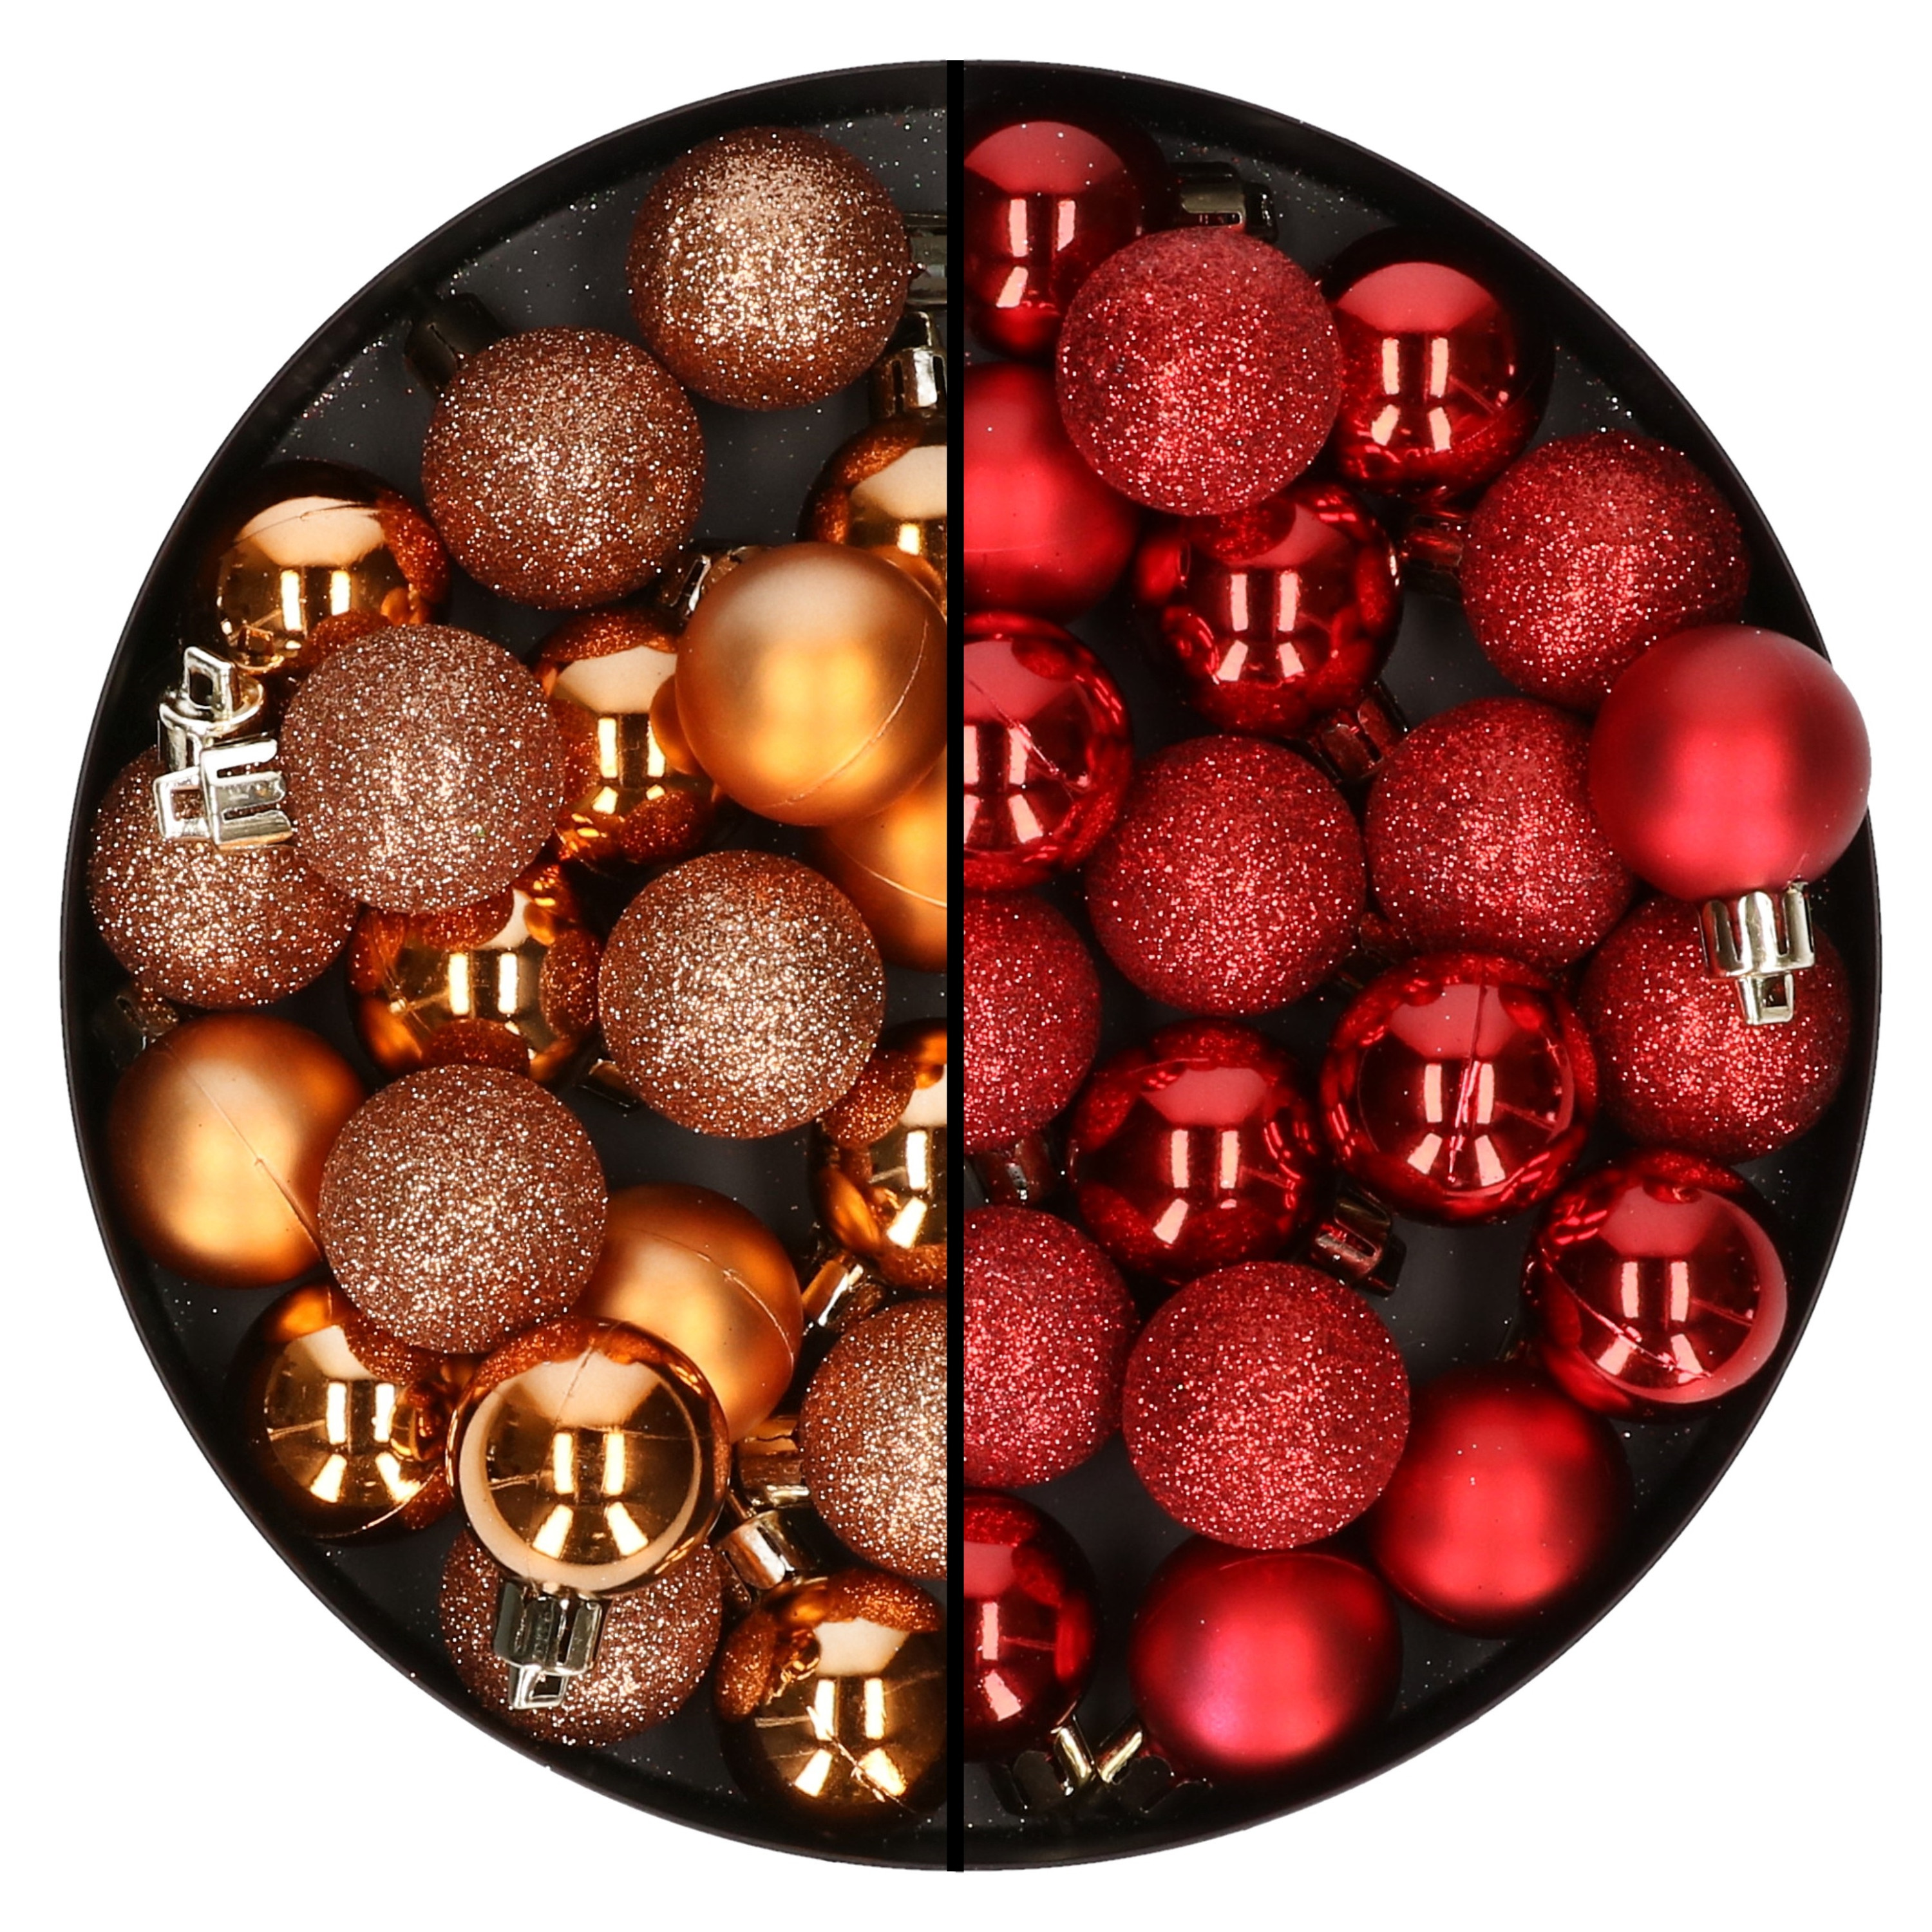 40x stuks kleine kunststof kerstballen rood en koper 3 cm